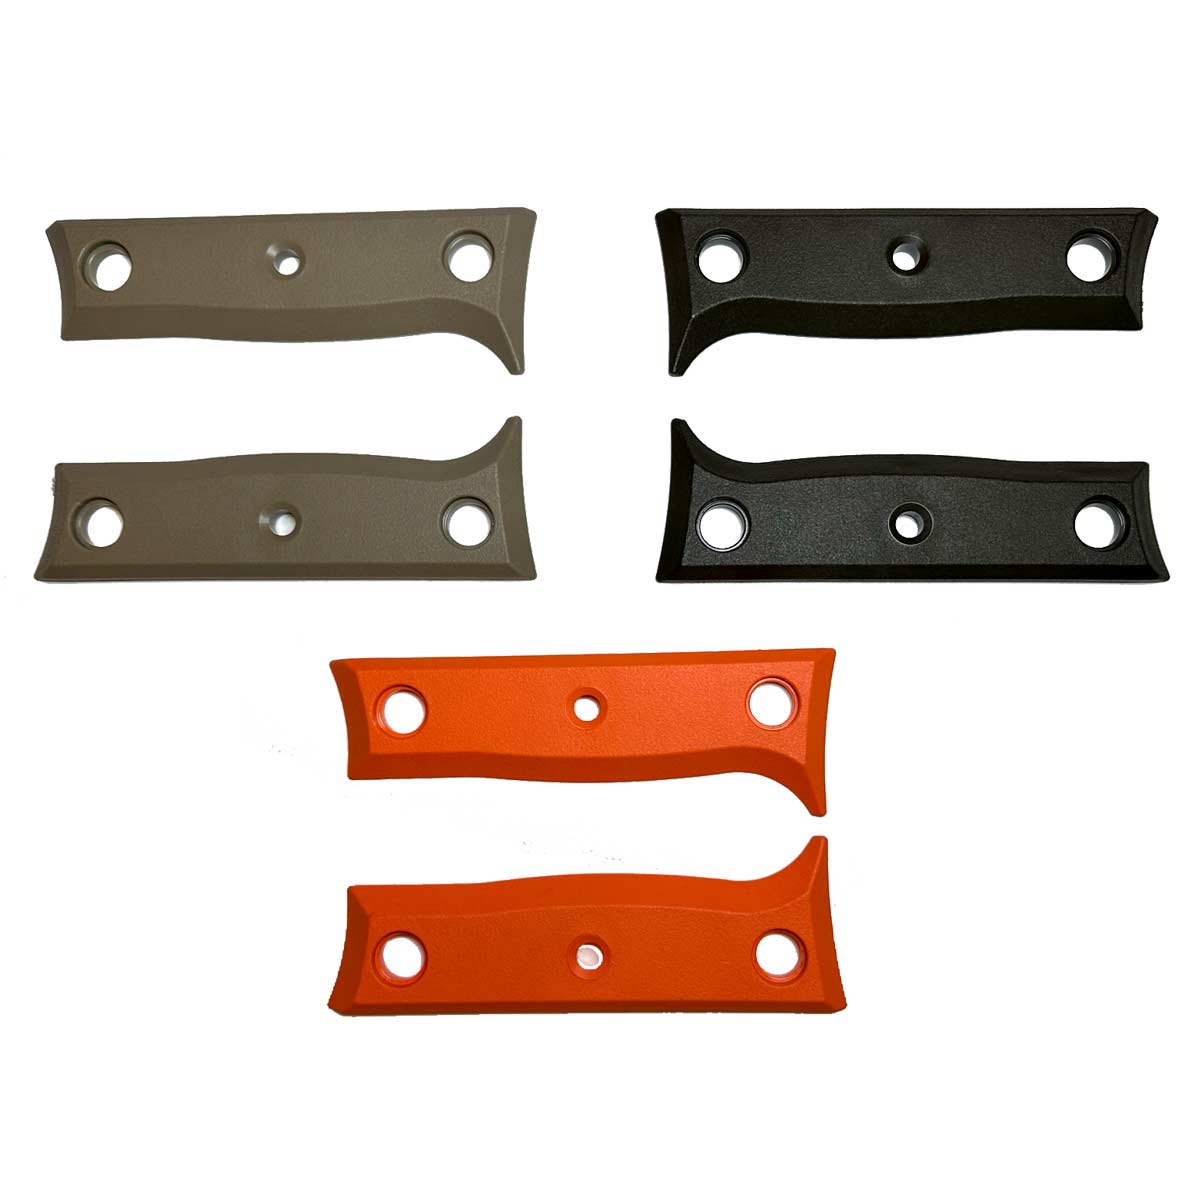 Kit de couleurs pour les manches du couteau K1 – sable/olive/orange